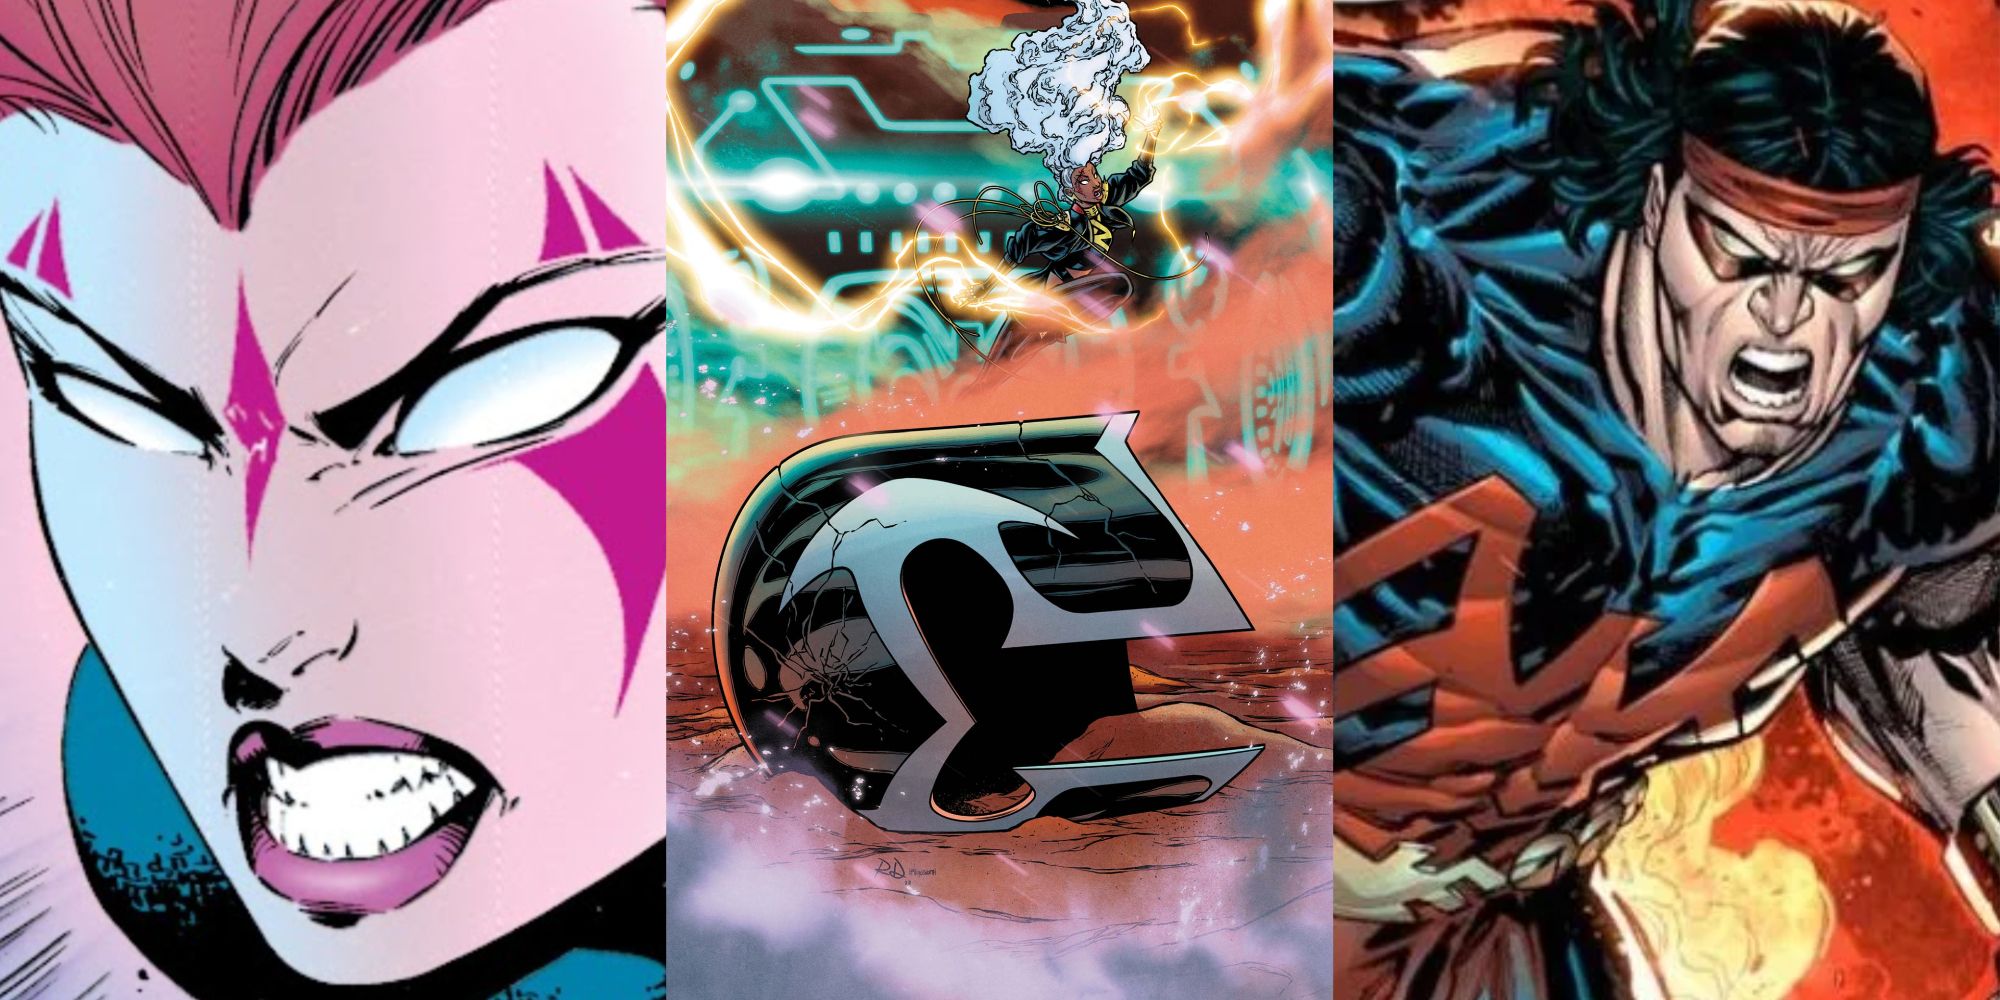 Split image of Blink, Magneto's fallen helmet, and Thunderbird from X-Men comics.